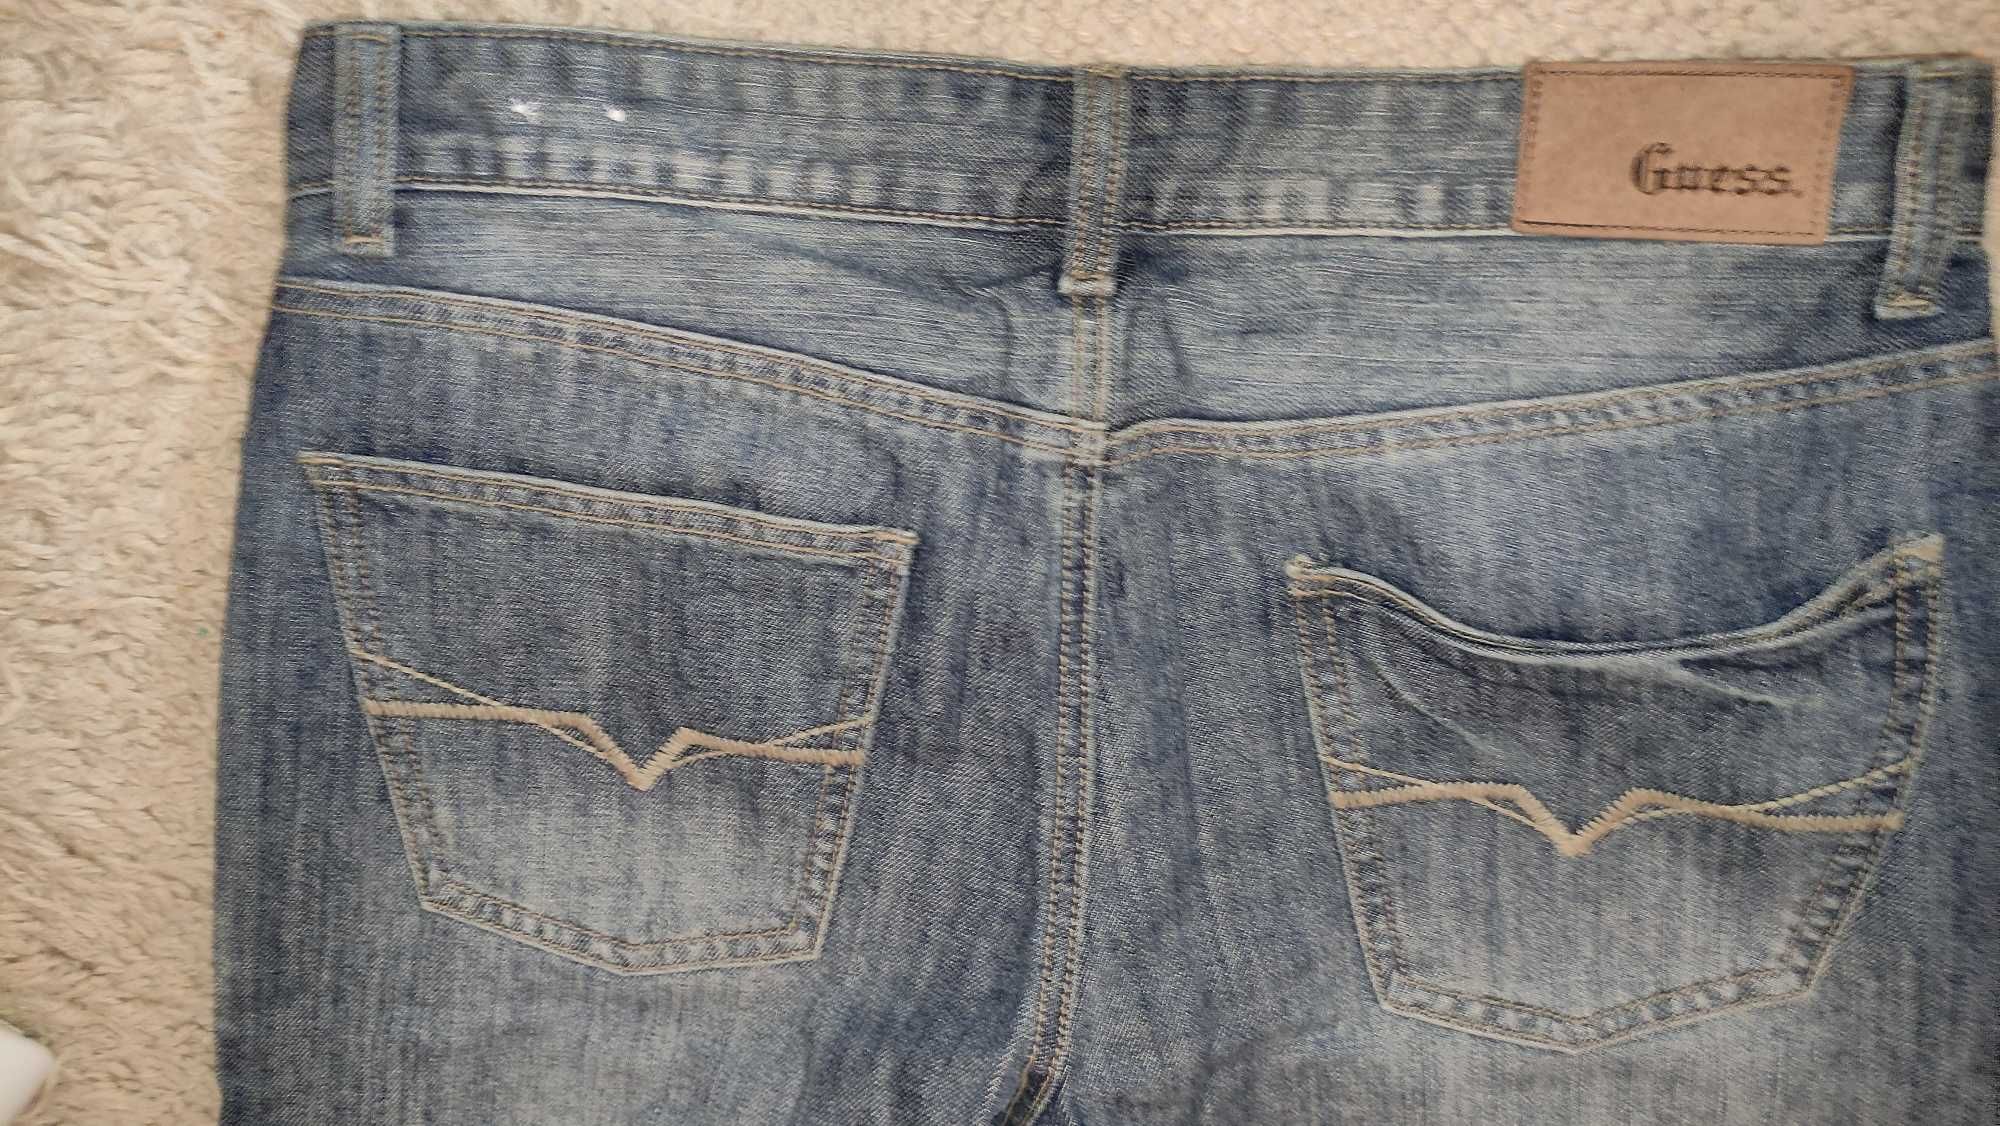 Дънки мъжки, Guess Jeans Montara, размер W32 L32, 85% памук